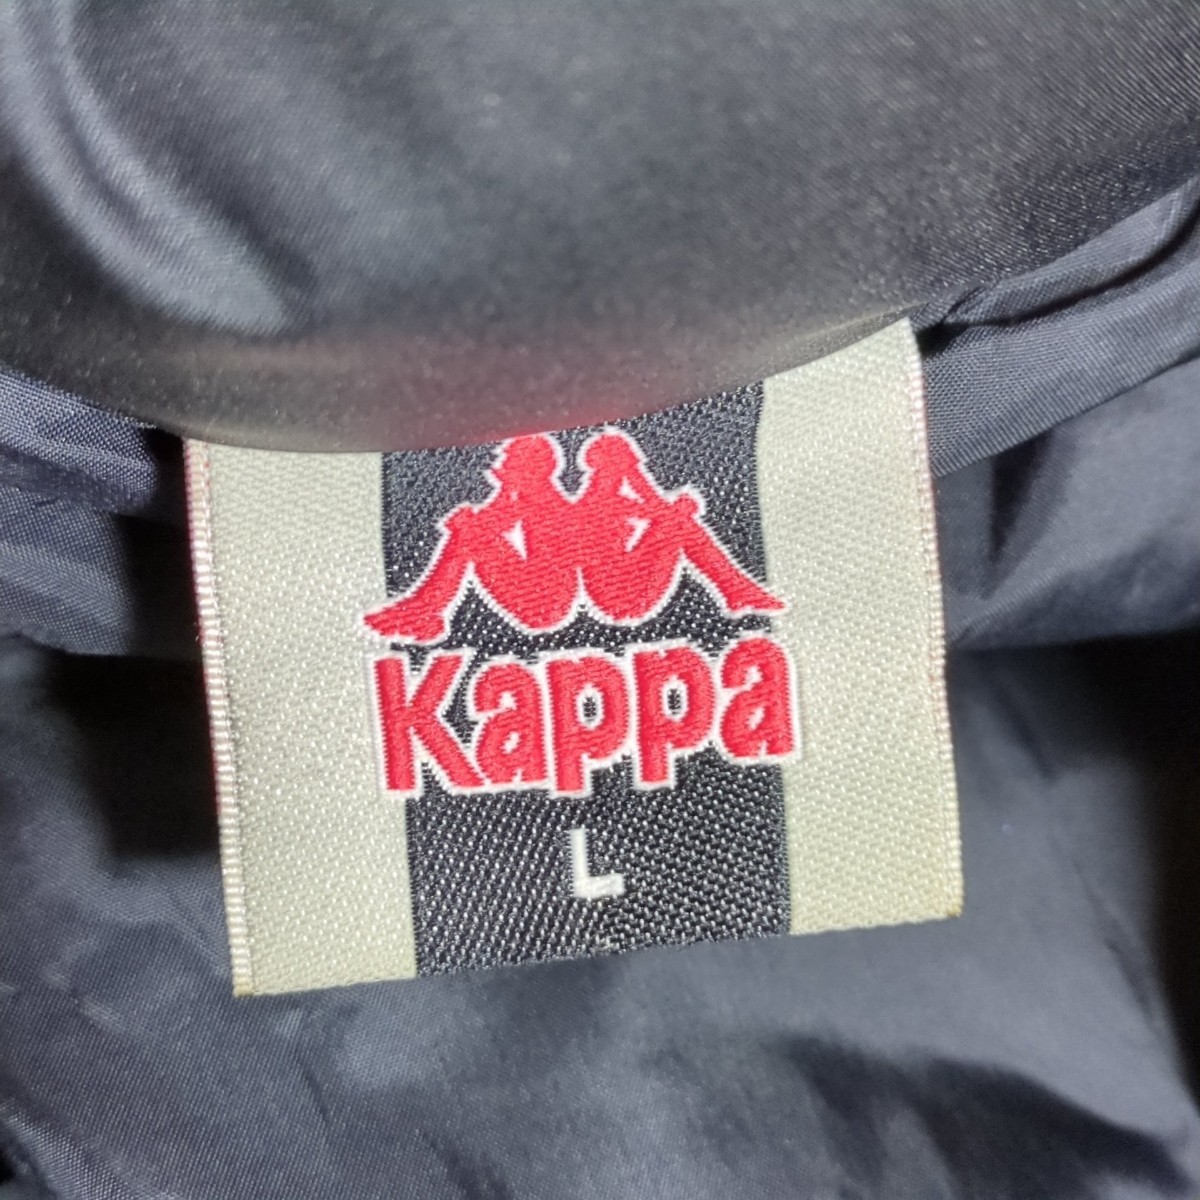 H7104AL Kappa カッパ サイズL ダウンジャケット ダウンジャンパー ブラック 黒 メンズ カジュアル スポーツ 防寒 秋冬 ボリュームダウン_画像7